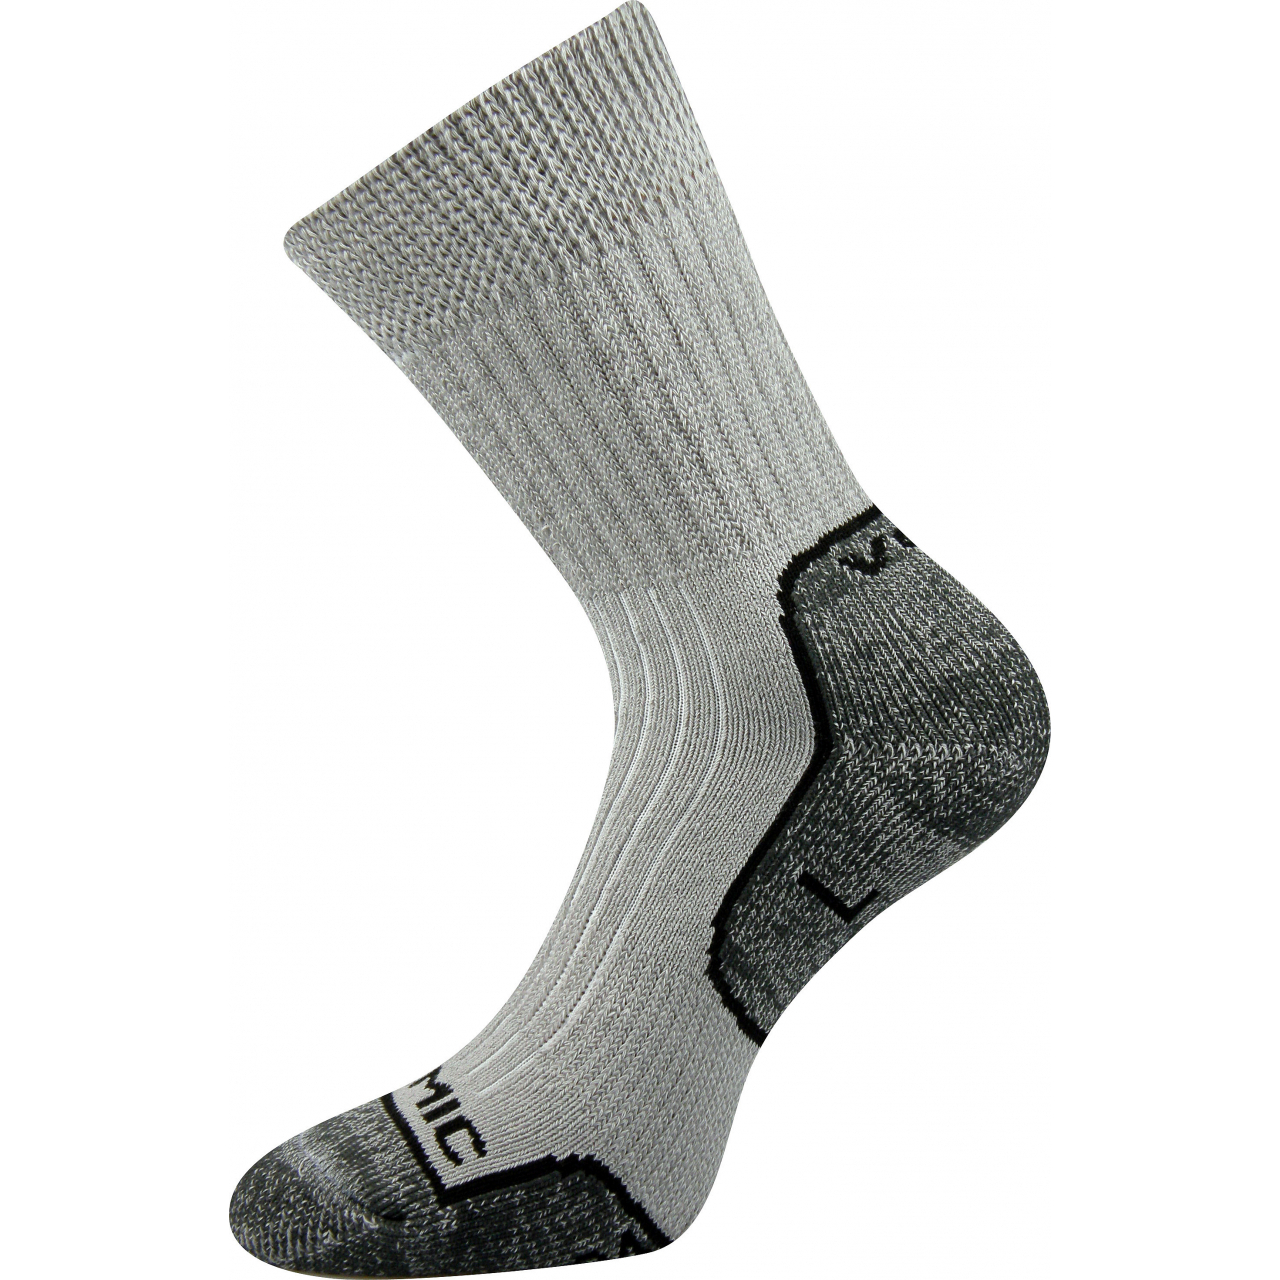 Ponožky unisex termo Voxx Zenith L + P - světle šedé-tmavě šedé, 41-42